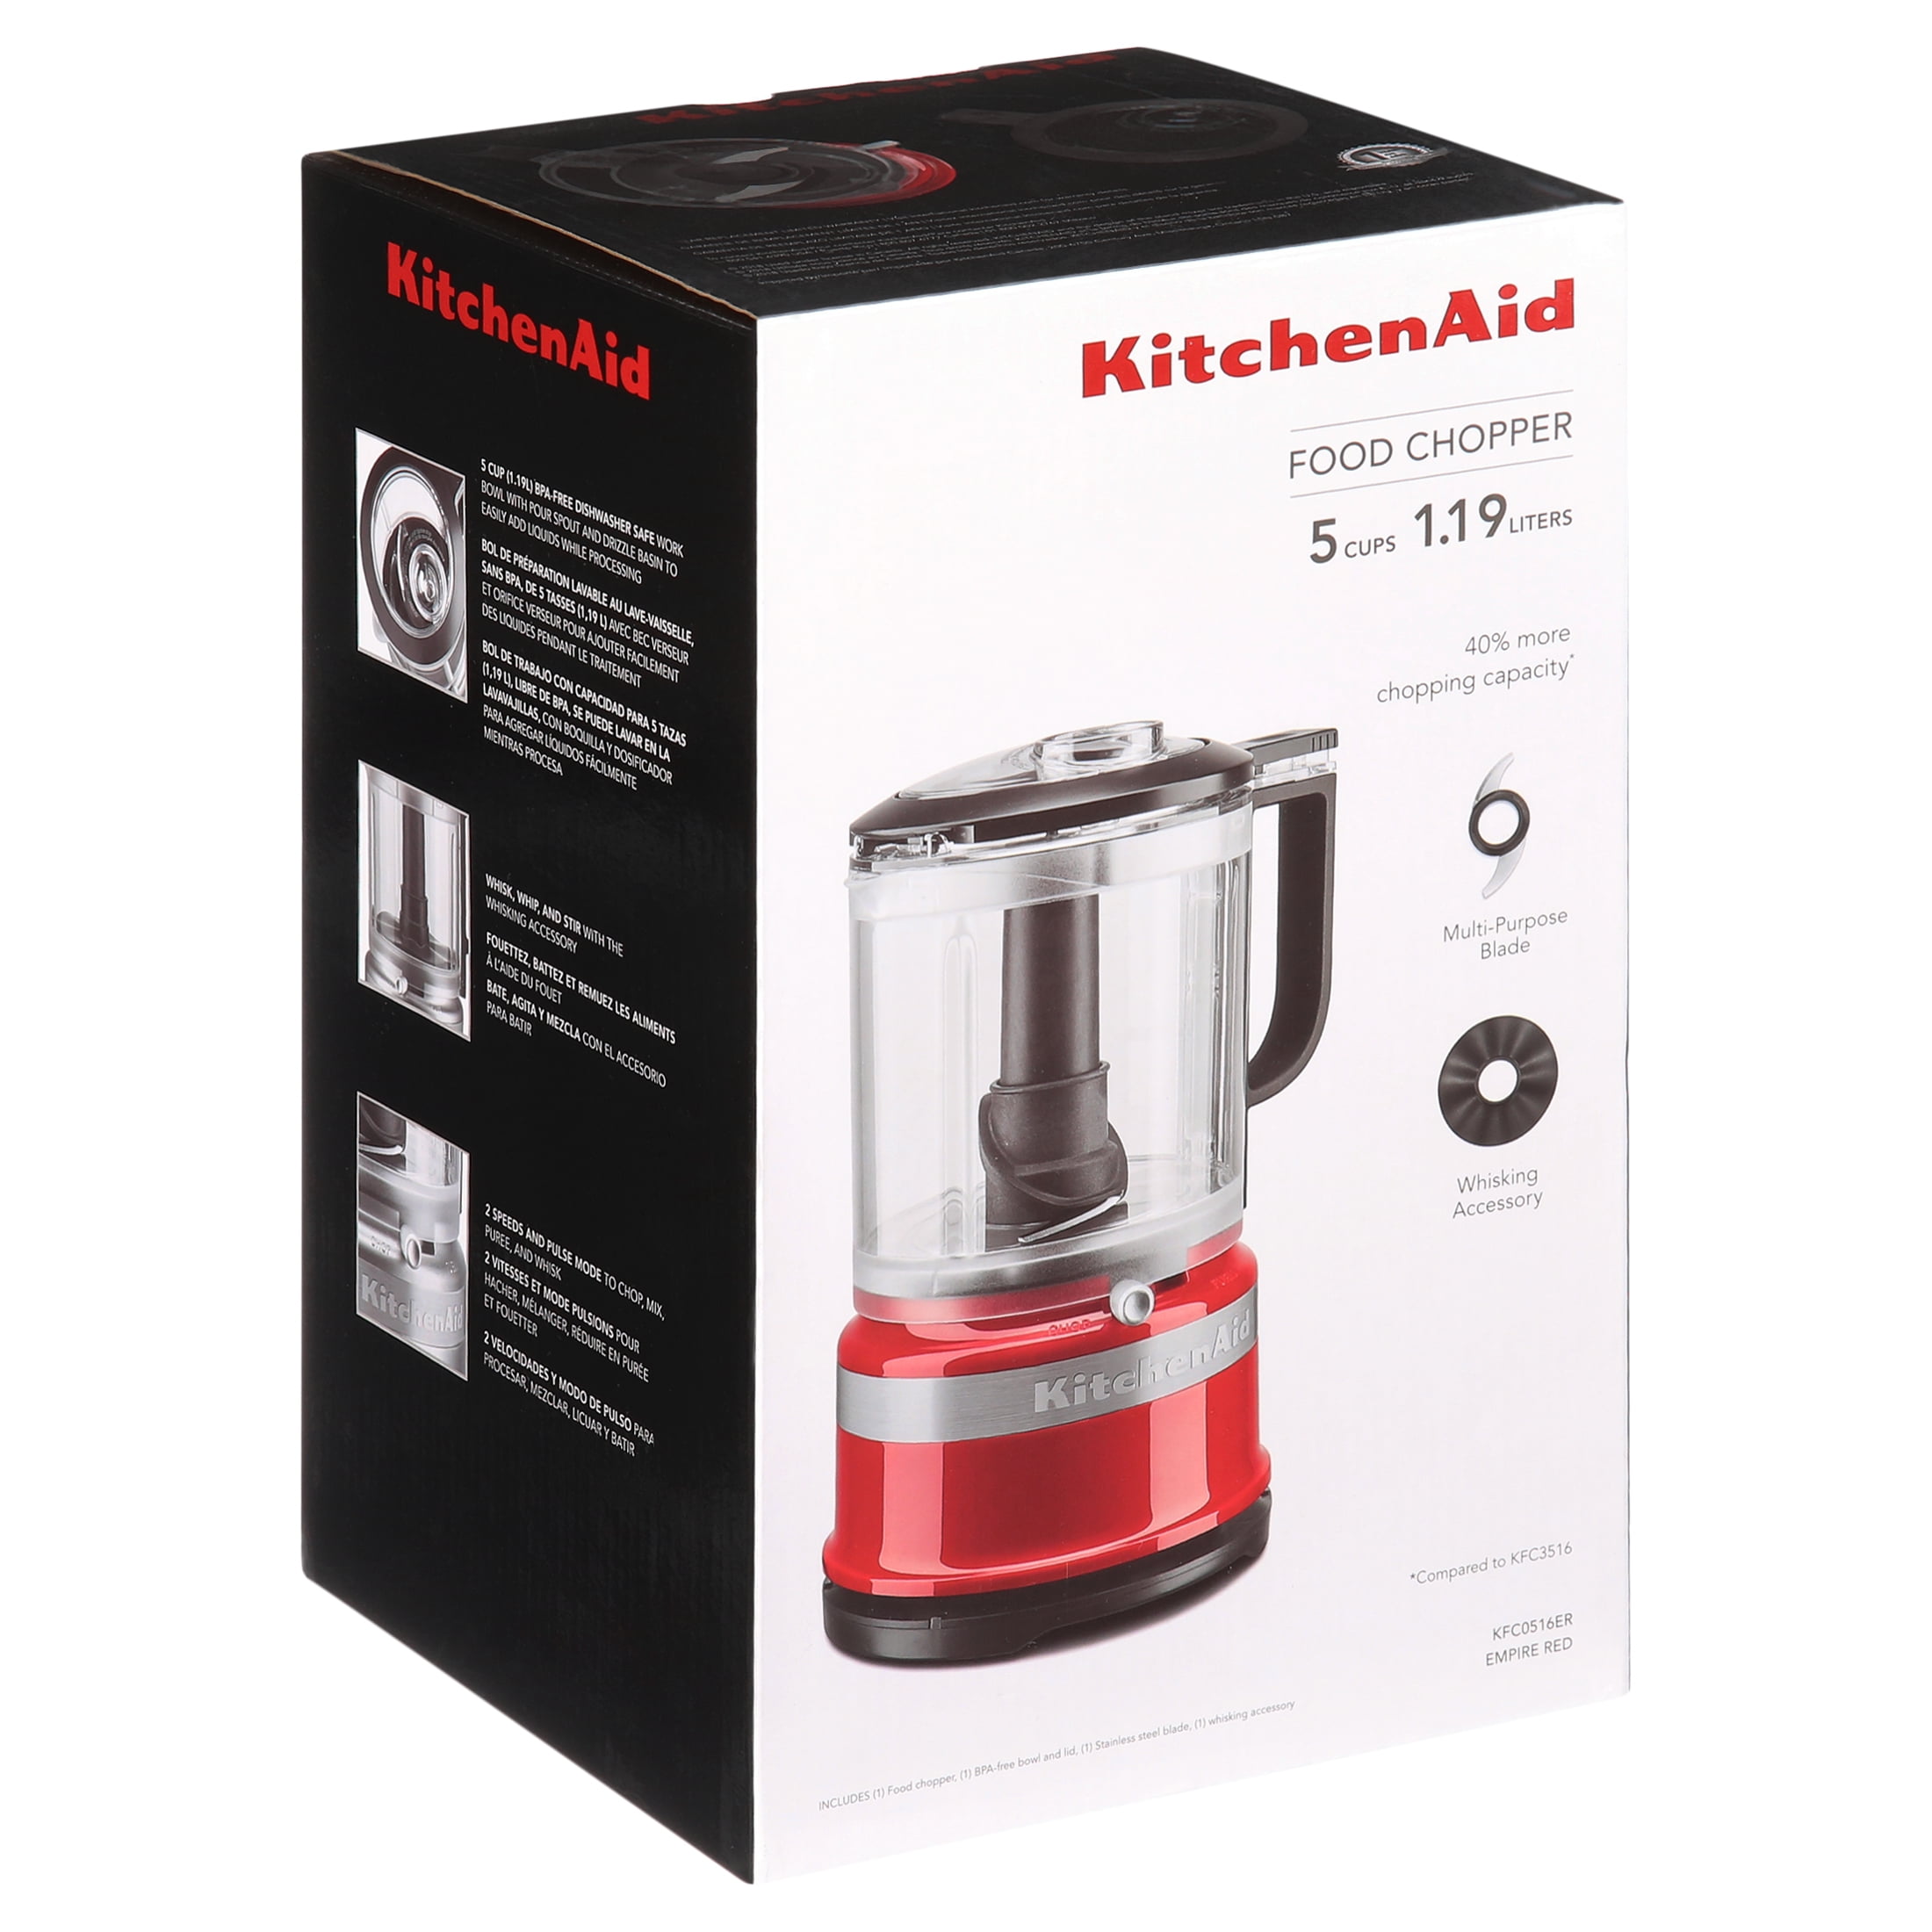 KitchenAid 5 Cup Food Chopper - KFC0516 - 3